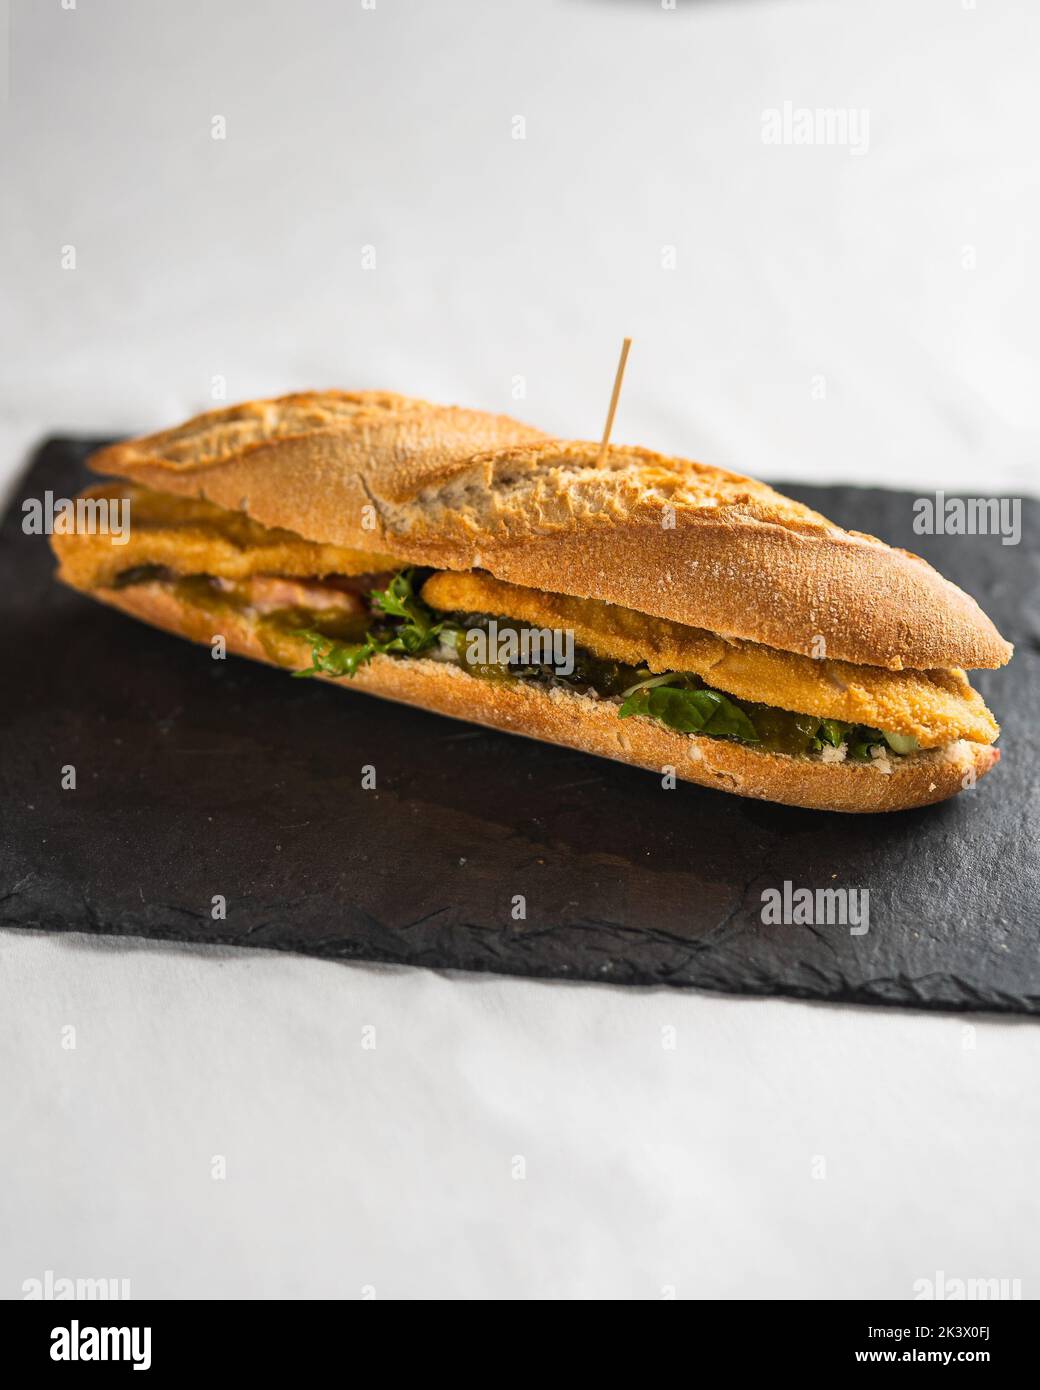 Un primer plano de un delicioso sándwich recién hecho sobre una pizarra negra Foto de stock